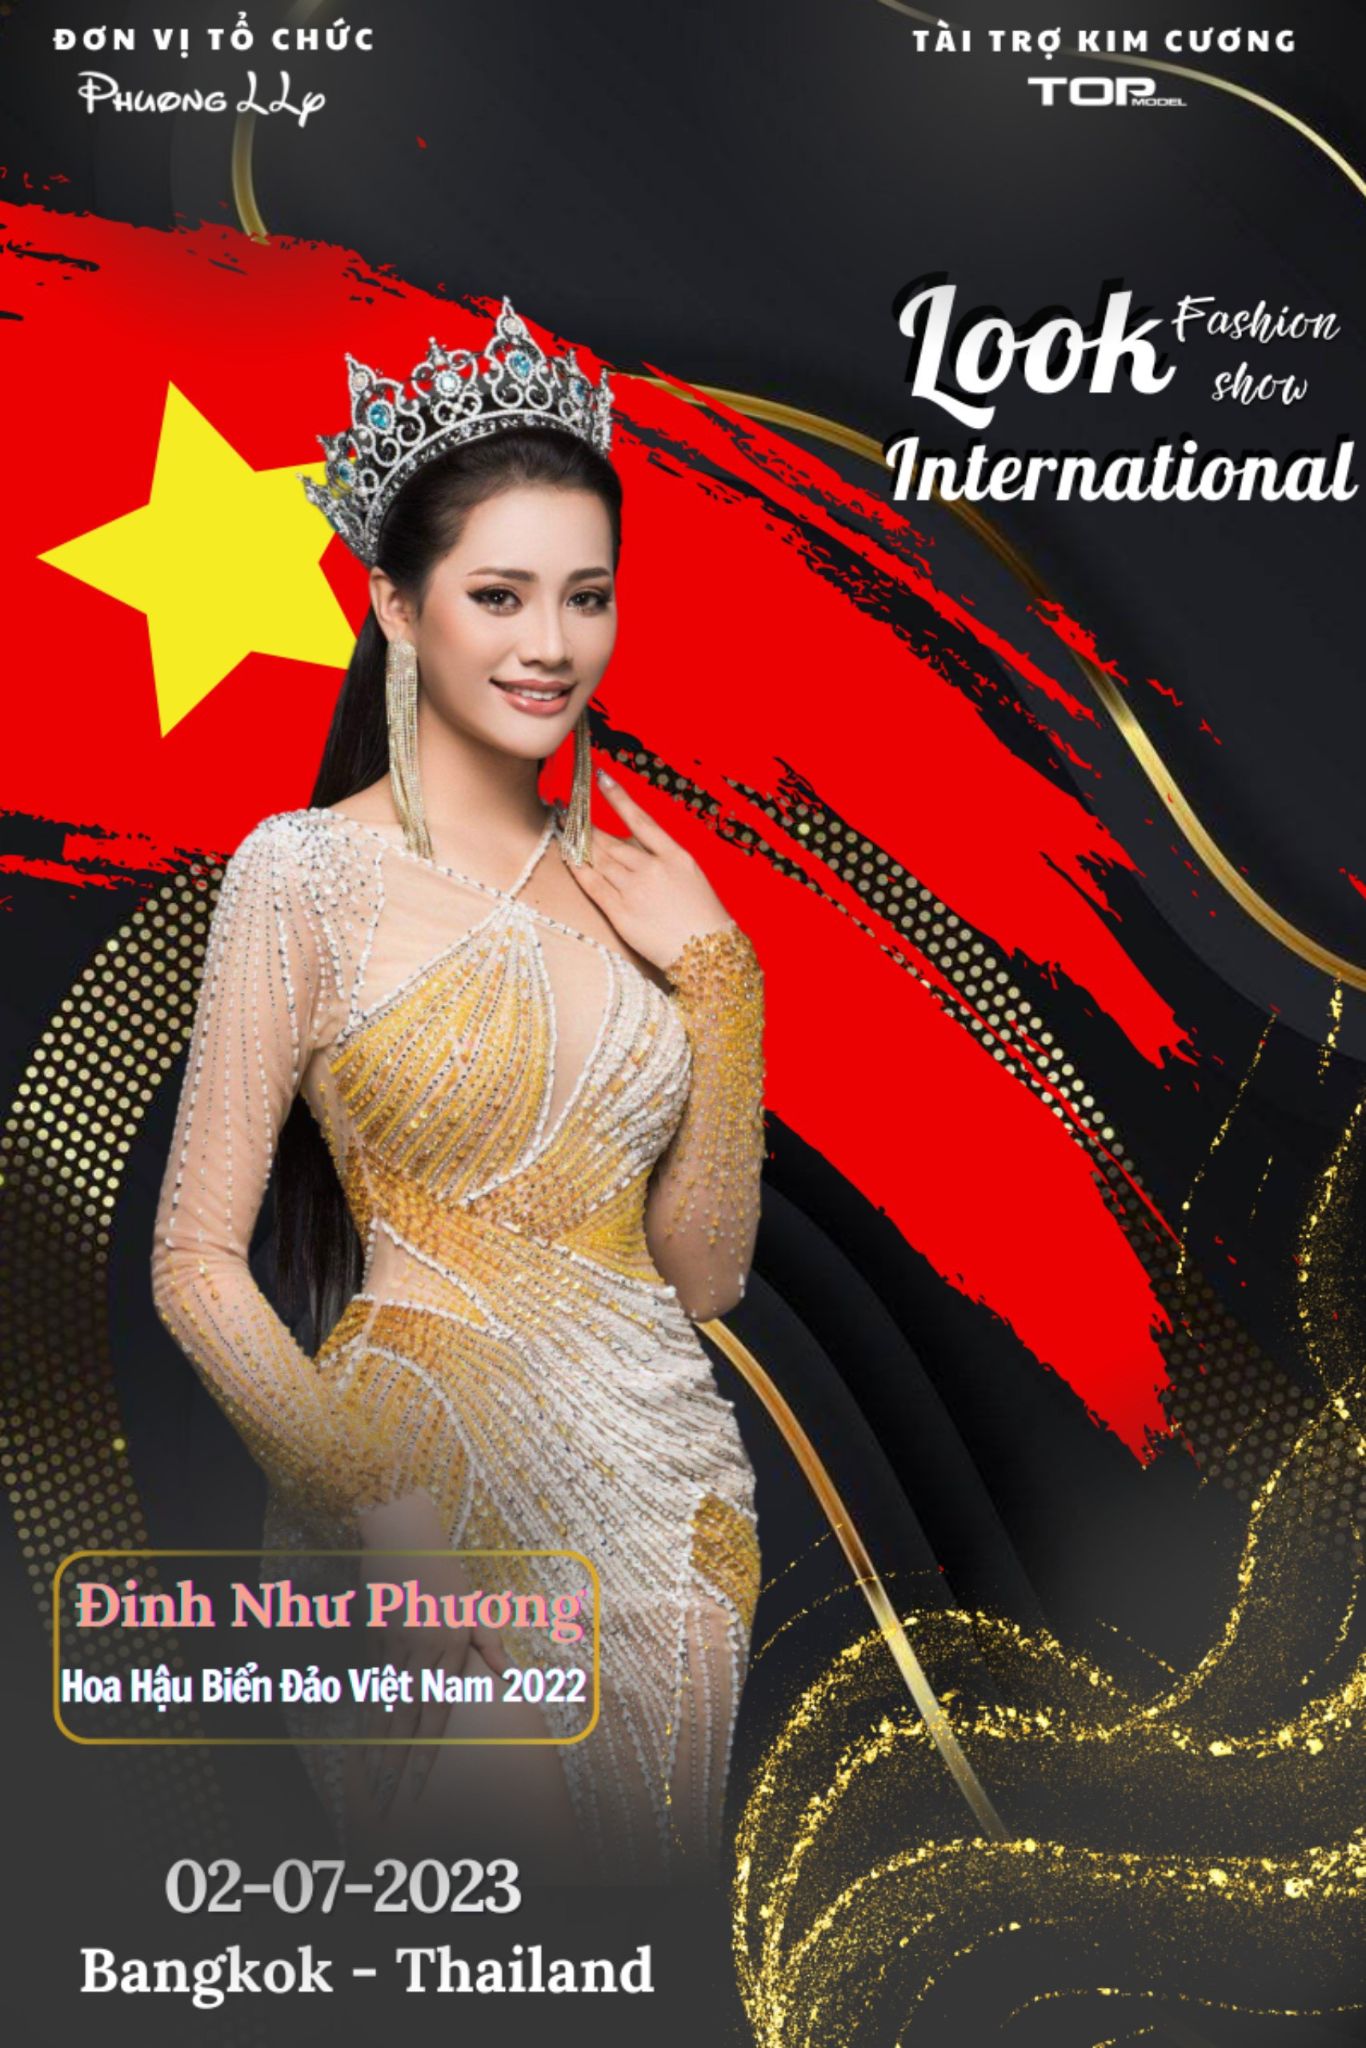 Hoa hậu Biển đảo Việt Nam 2022 Đinh Như Phương NTK Phương Hồ tổ chức show thời trang đầu tiên tại nước ngoài